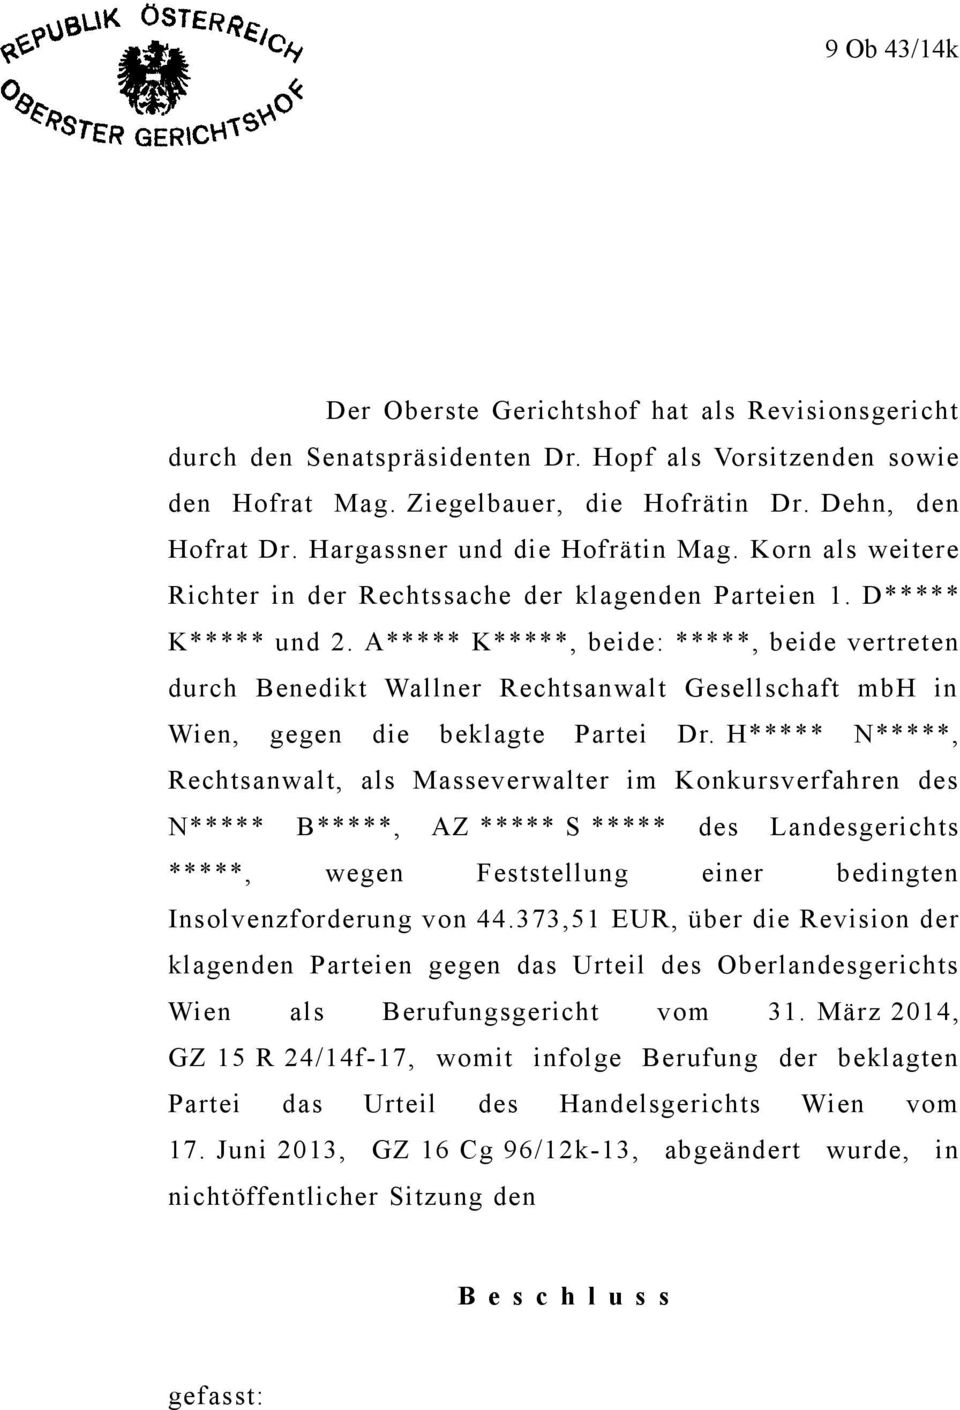 A***** K*****, beide: *****, beide vertreten durch Benedikt Wallner Rechtsanwalt Gesellschaft mbh in Wien, gegen die beklagte Partei Dr.